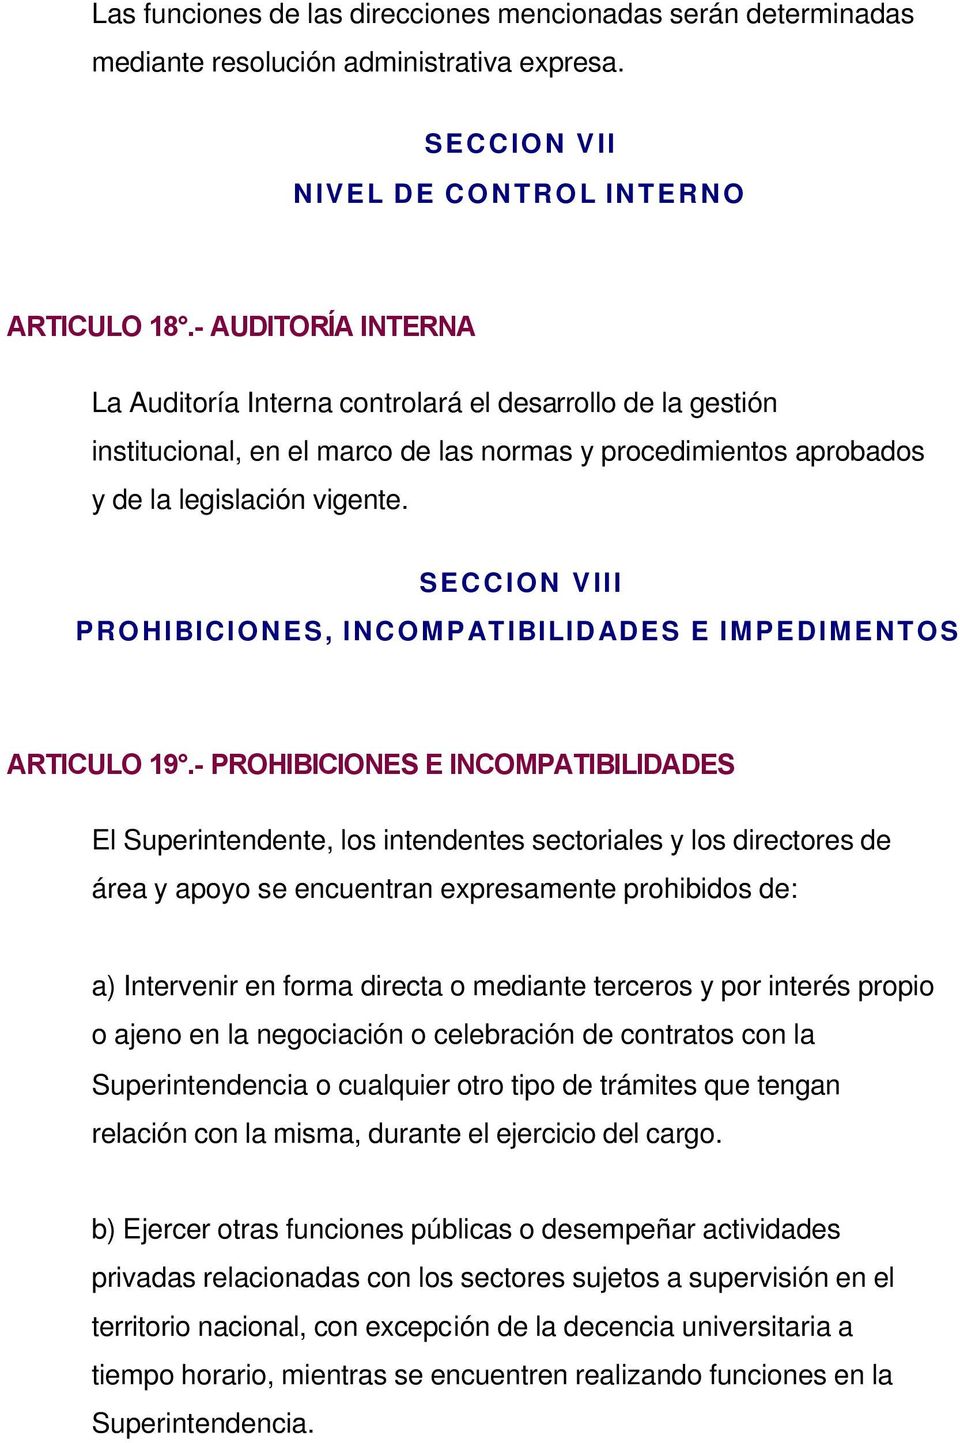 SECCION VIII PROHIBICIONES, INCOMPATIBILIDADES E IMPEDIMENTOS ARTICULO 19.